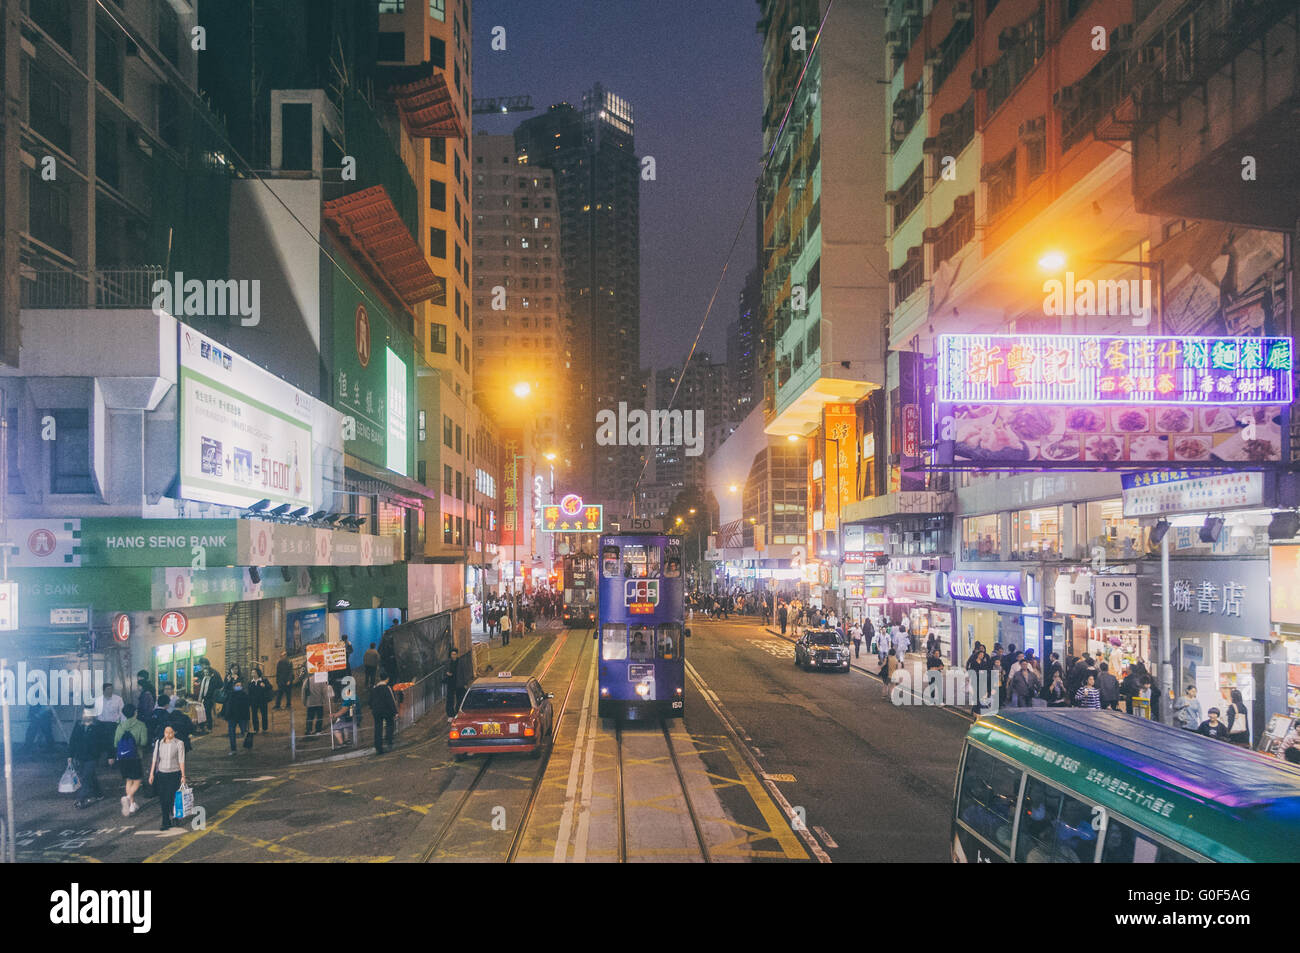 hong kong street at night Stock Photo